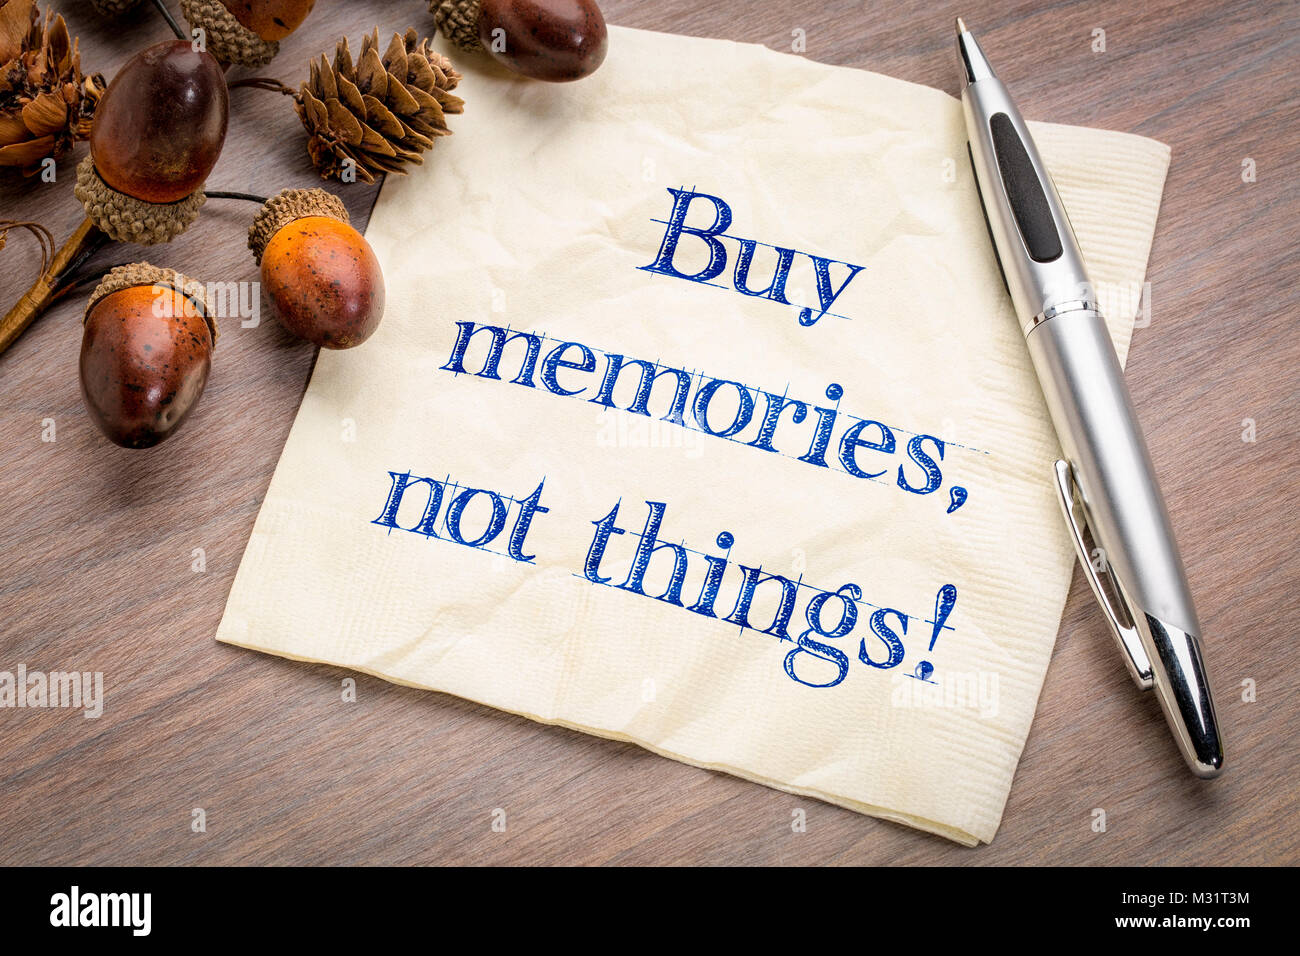 Kaufen Erinnerungen, die Dinge nicht! Inspirational Handschrift auf einem napking mit Acorn decotation. Stockfoto